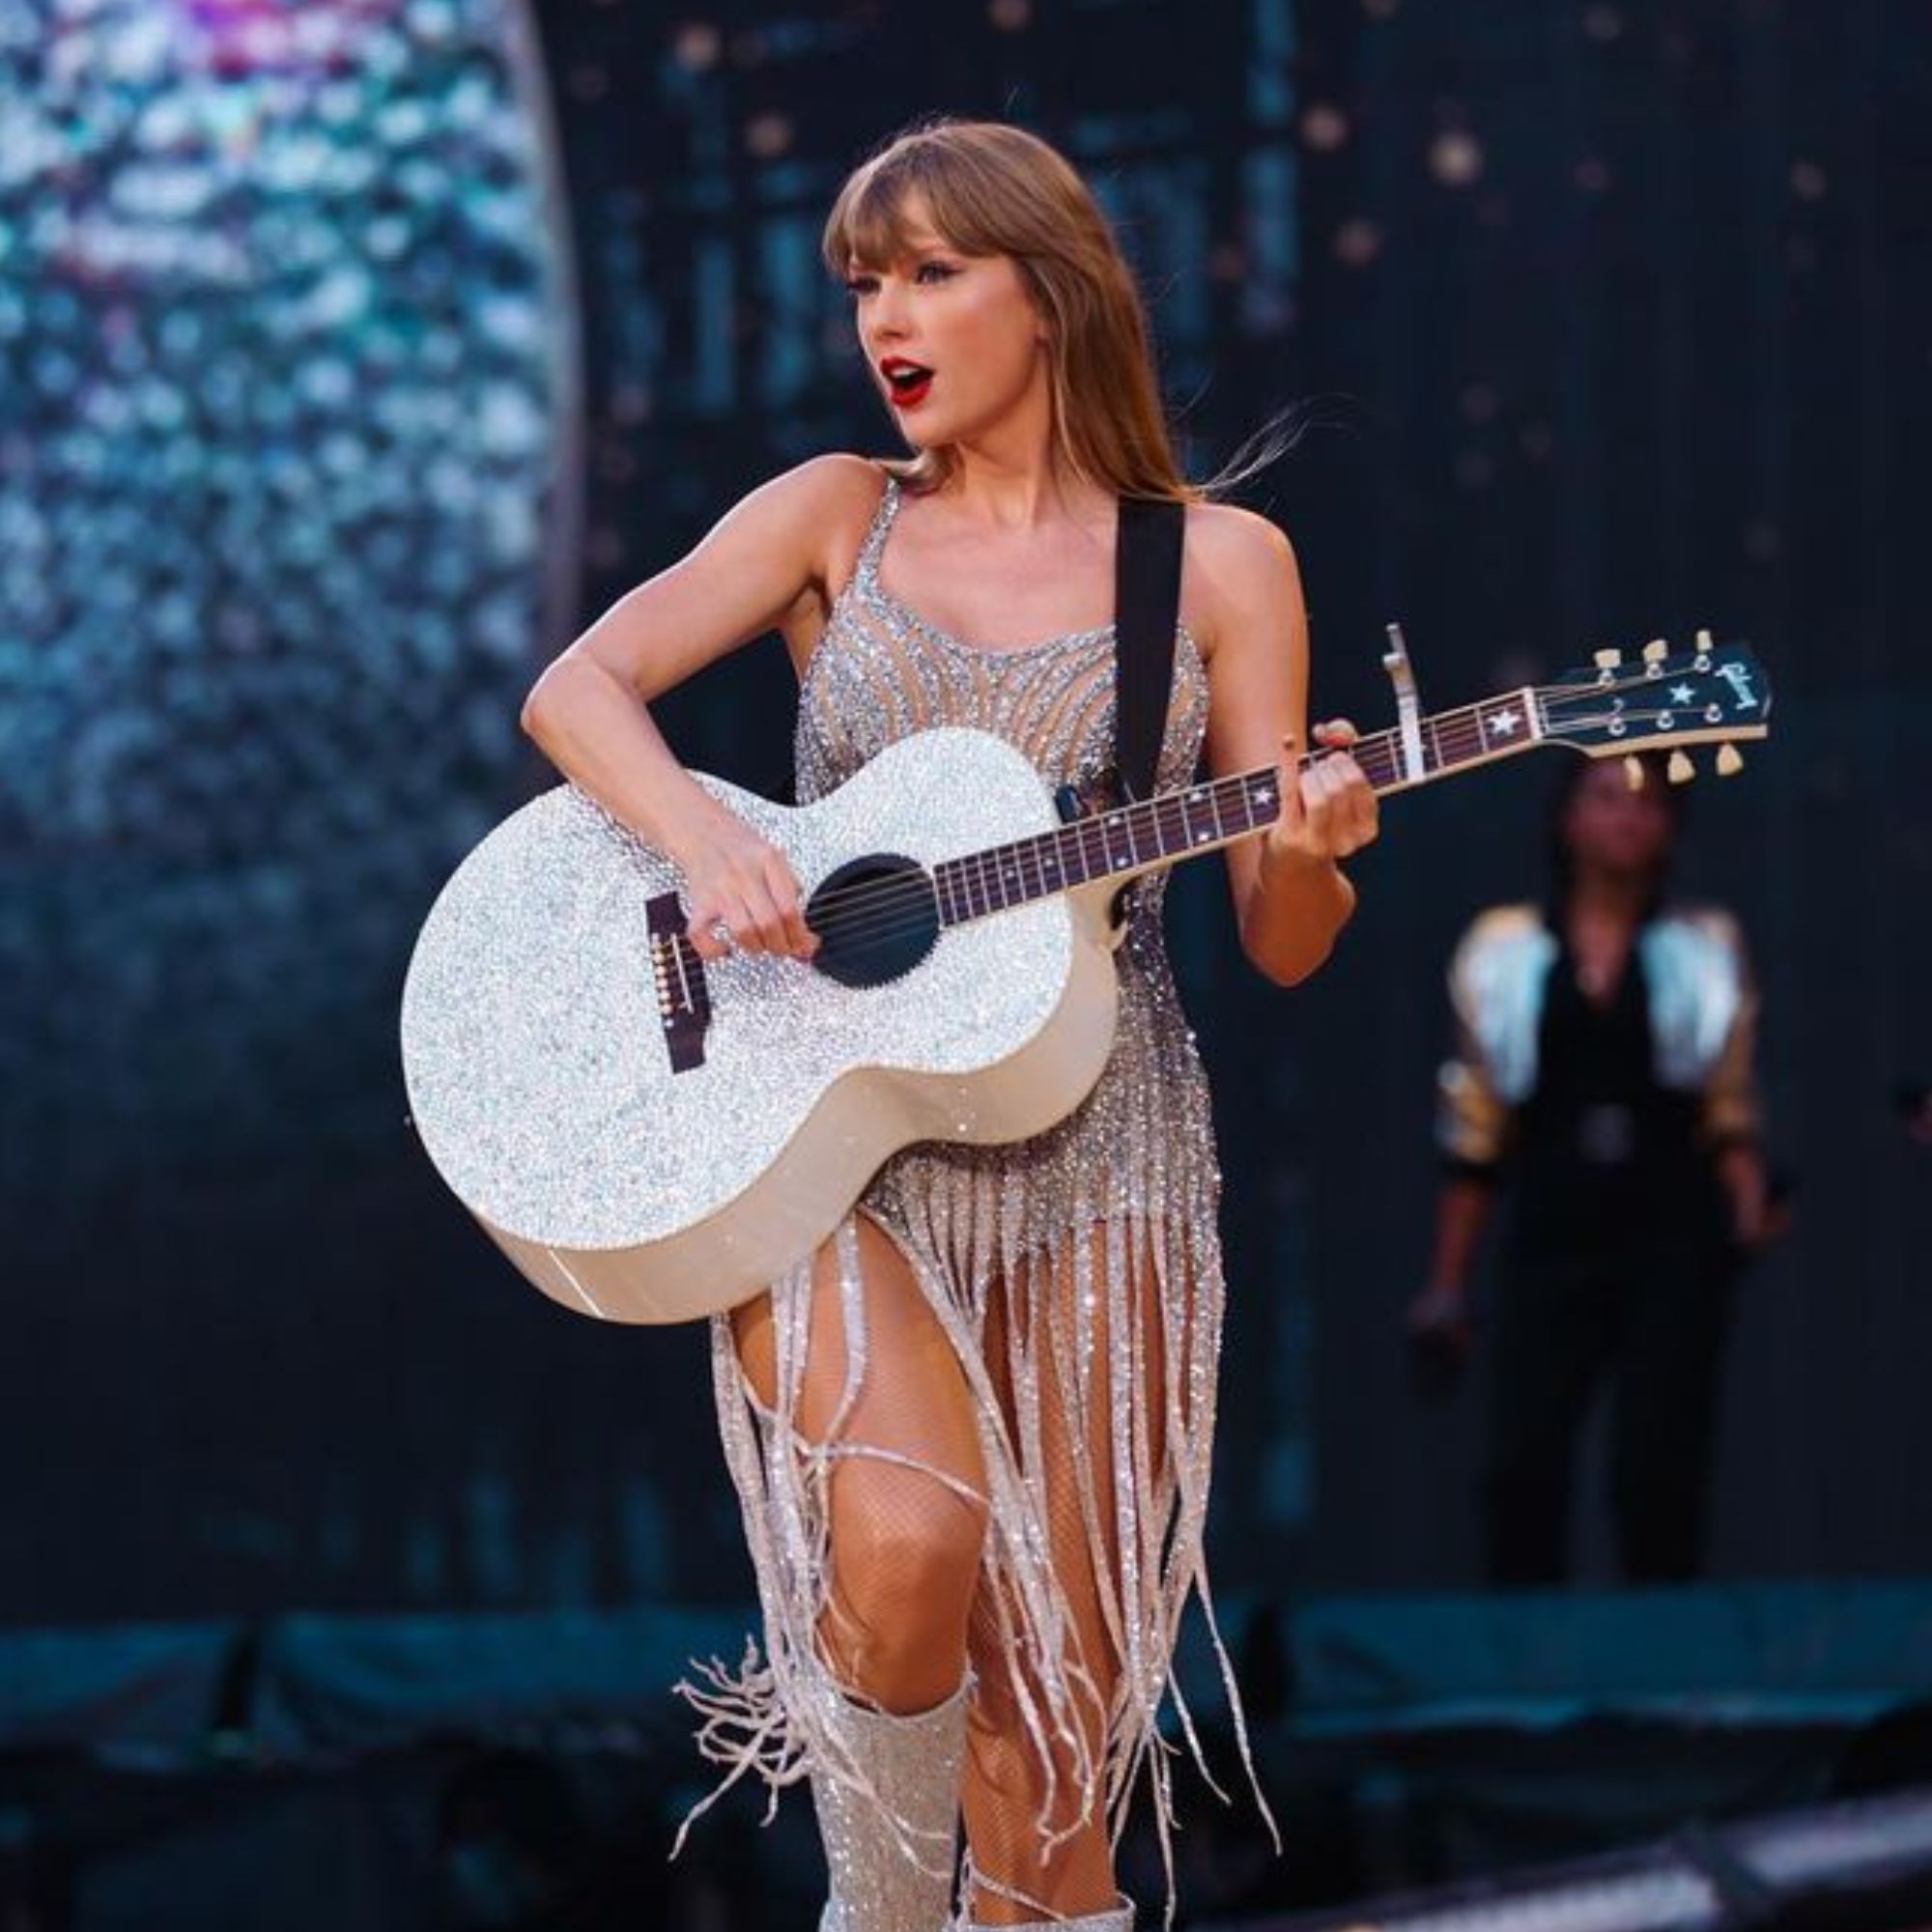 Taylor Swift Eras Tour surprise songs